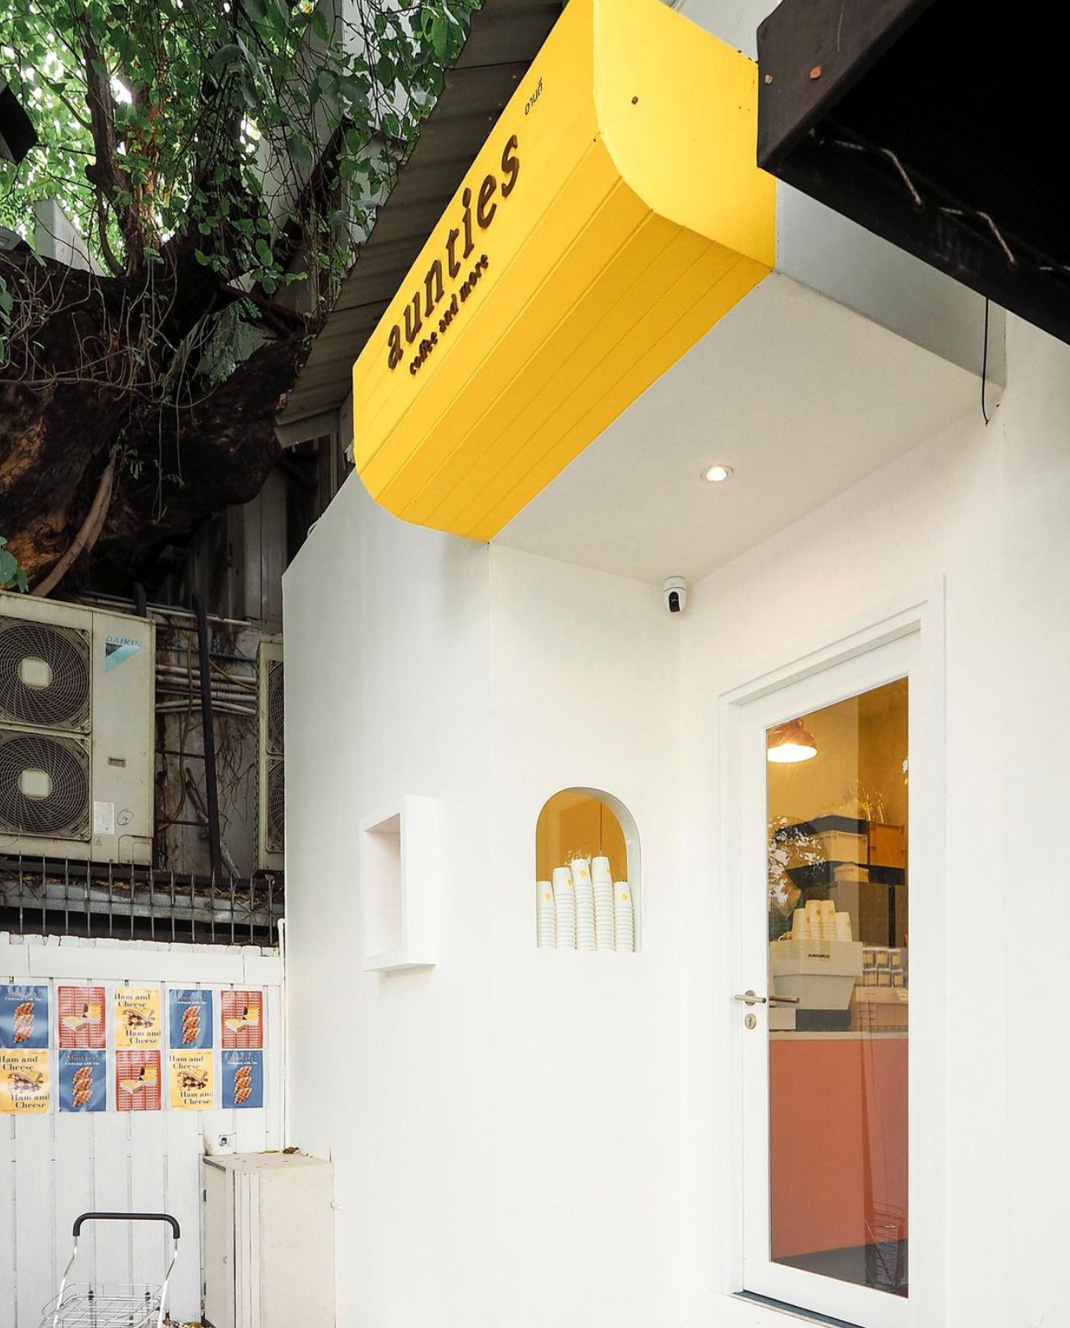 咖啡店aunties coffee 泰国 曼谷 白色 袖珍店 logo设计 vi设计 空间设计